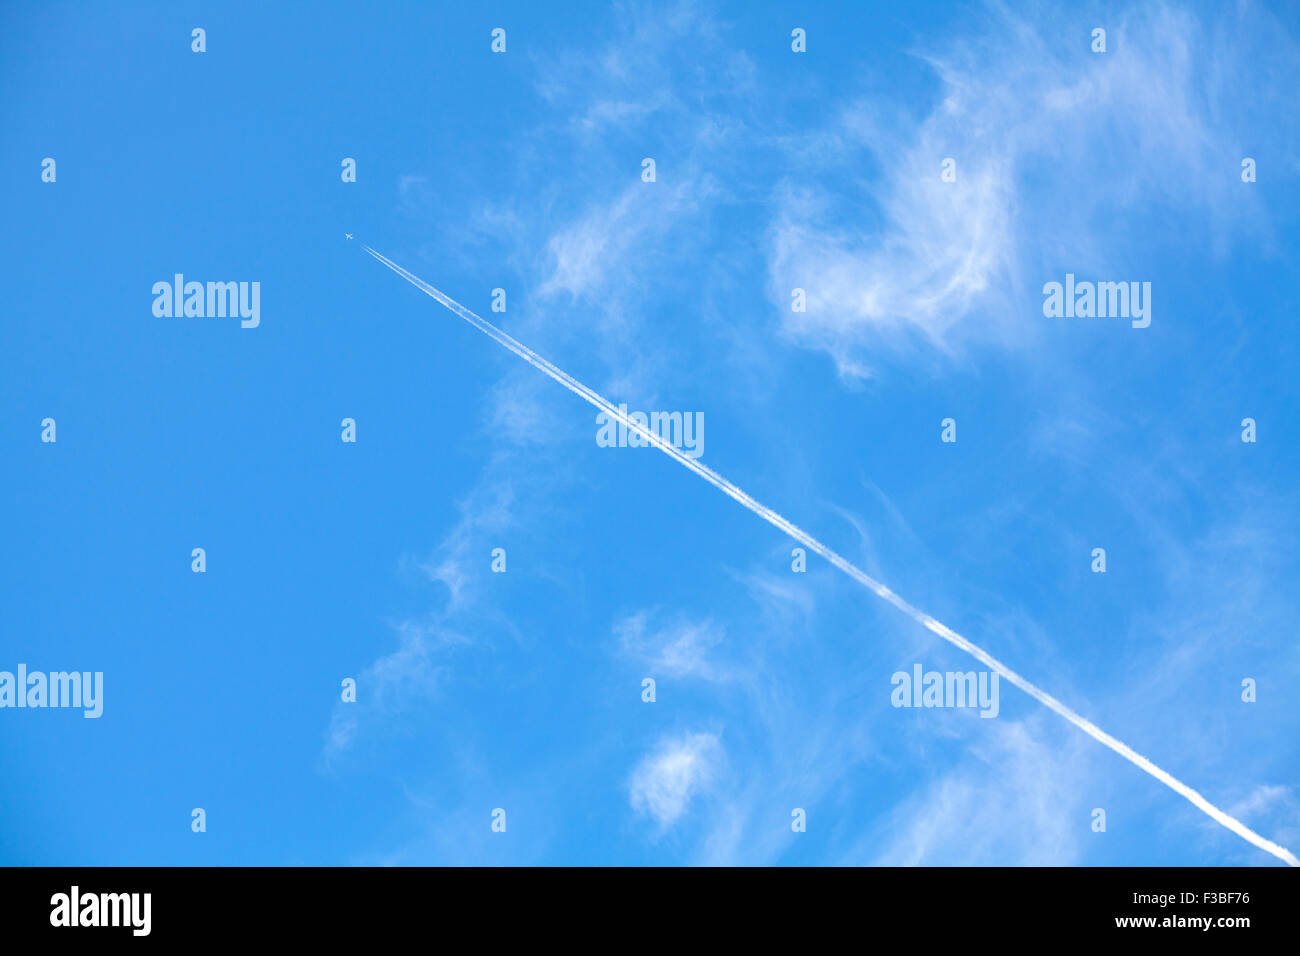 Aeroplano contrail contro il bellissimo cielo blu con nuvole delicate, spazio per il testo. Foto Stock